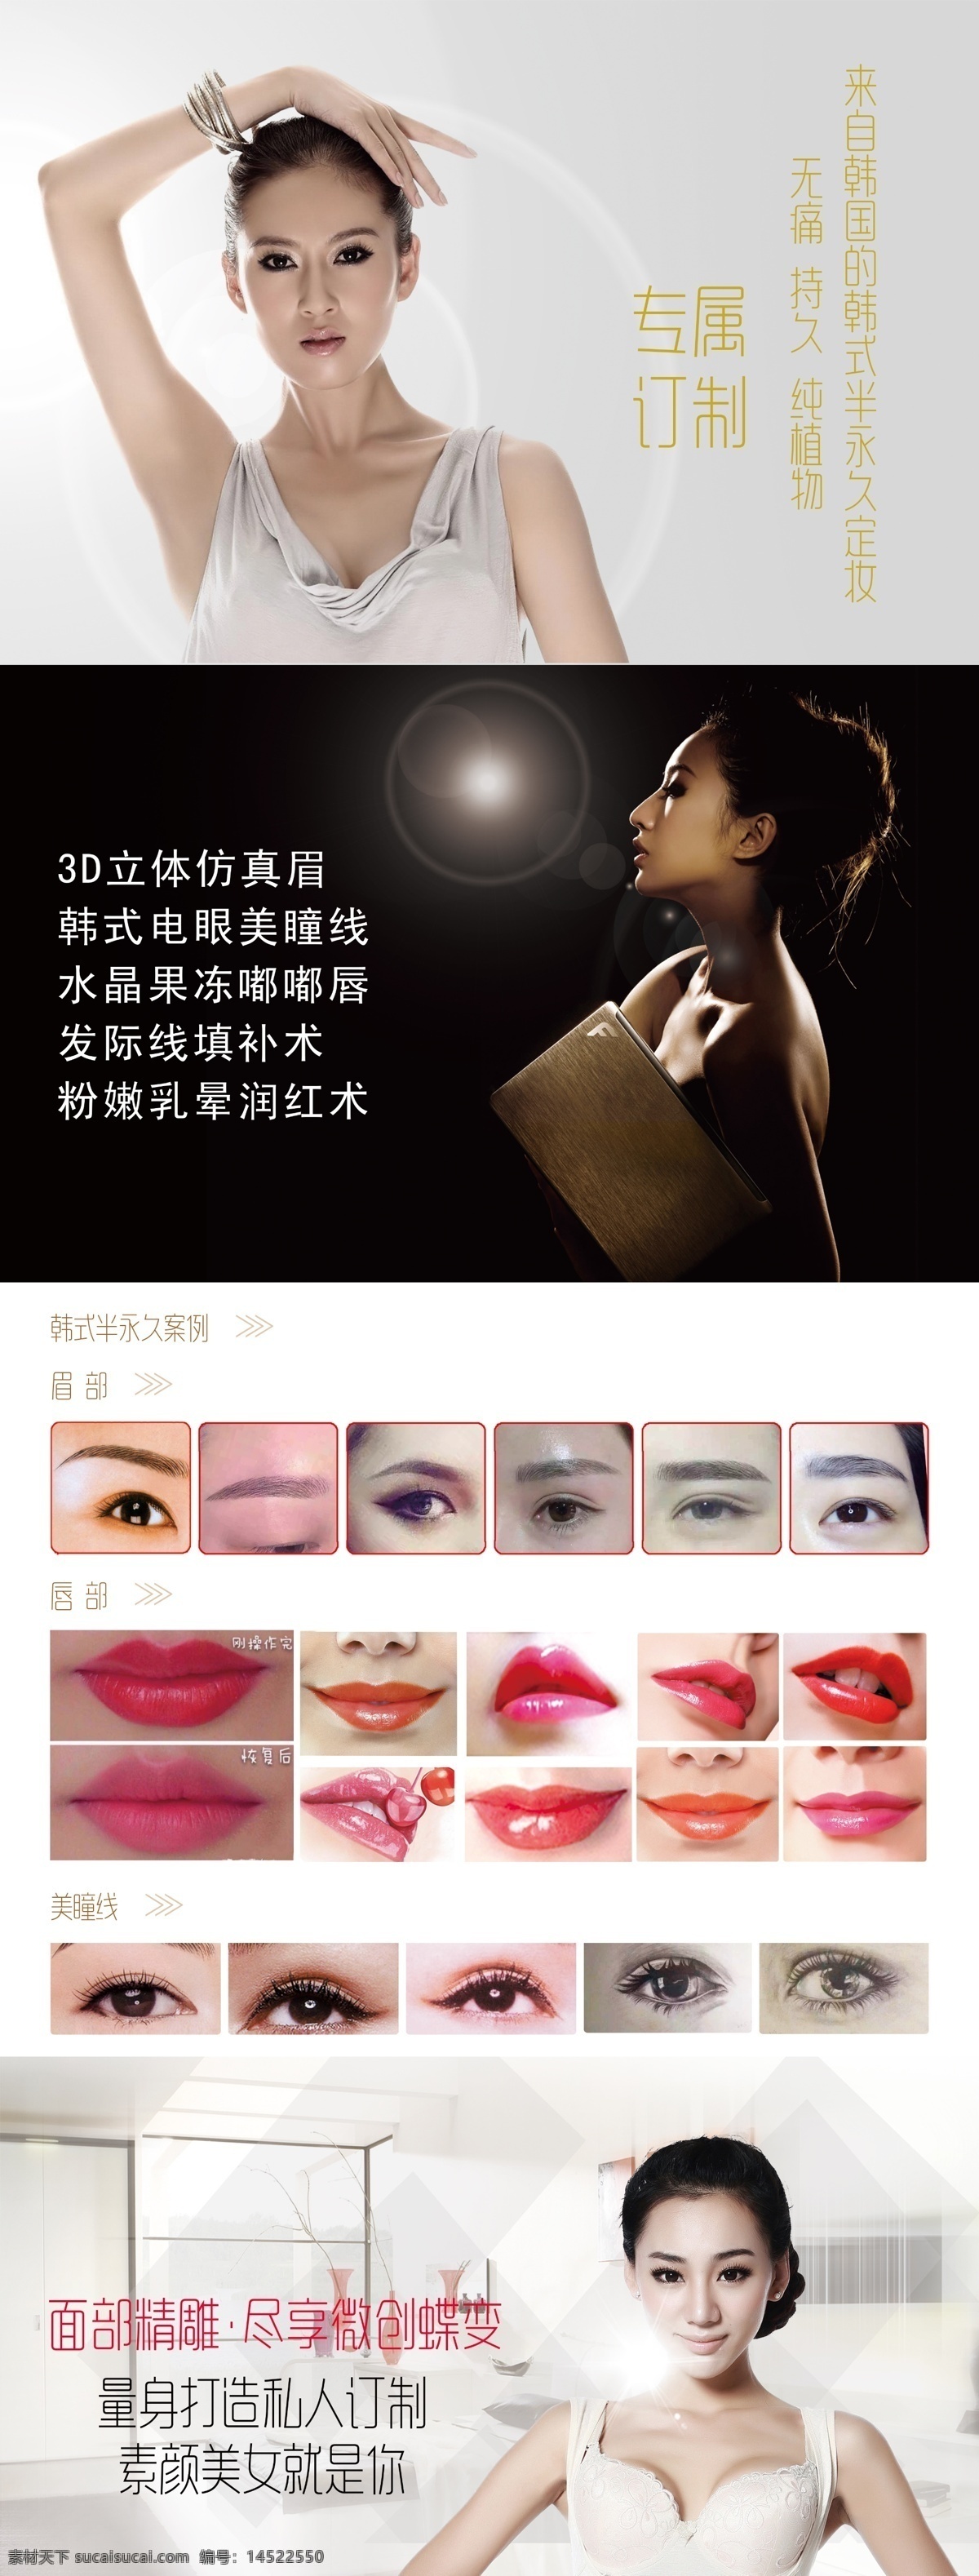 韩式 半 定妆 海报 韩式半定妆 韩式对比图 纹眉对比图 丰唇对比图 美瞳线对比图